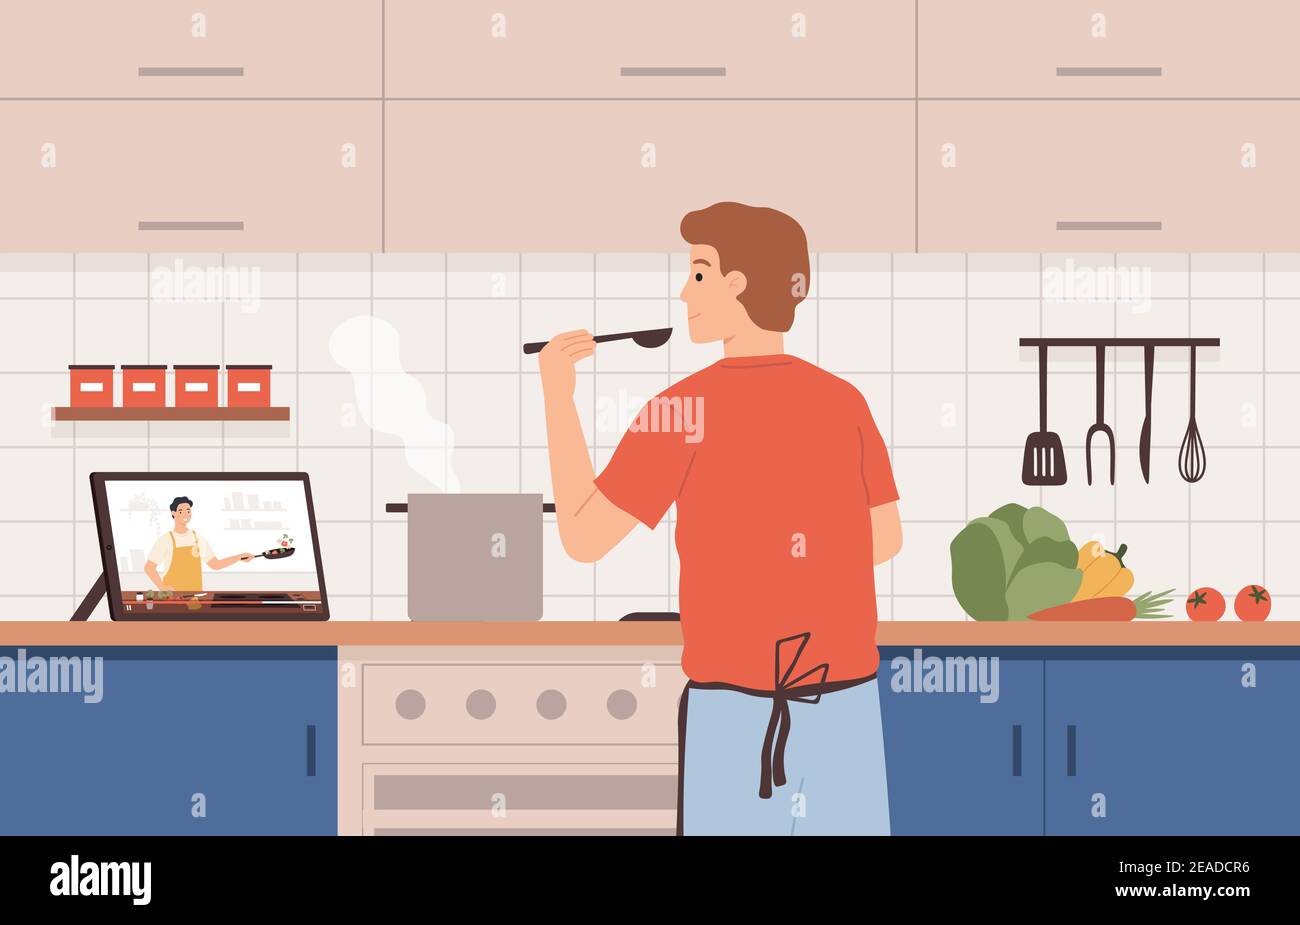 Video-Rezept ansehen. Mann Kochen in der Küche mit Online-Koch-Kurse. Zubereitung von Essen durch Tutorial, Abstand Lernen zu Hause Vektor-Konzept Stock Vektor